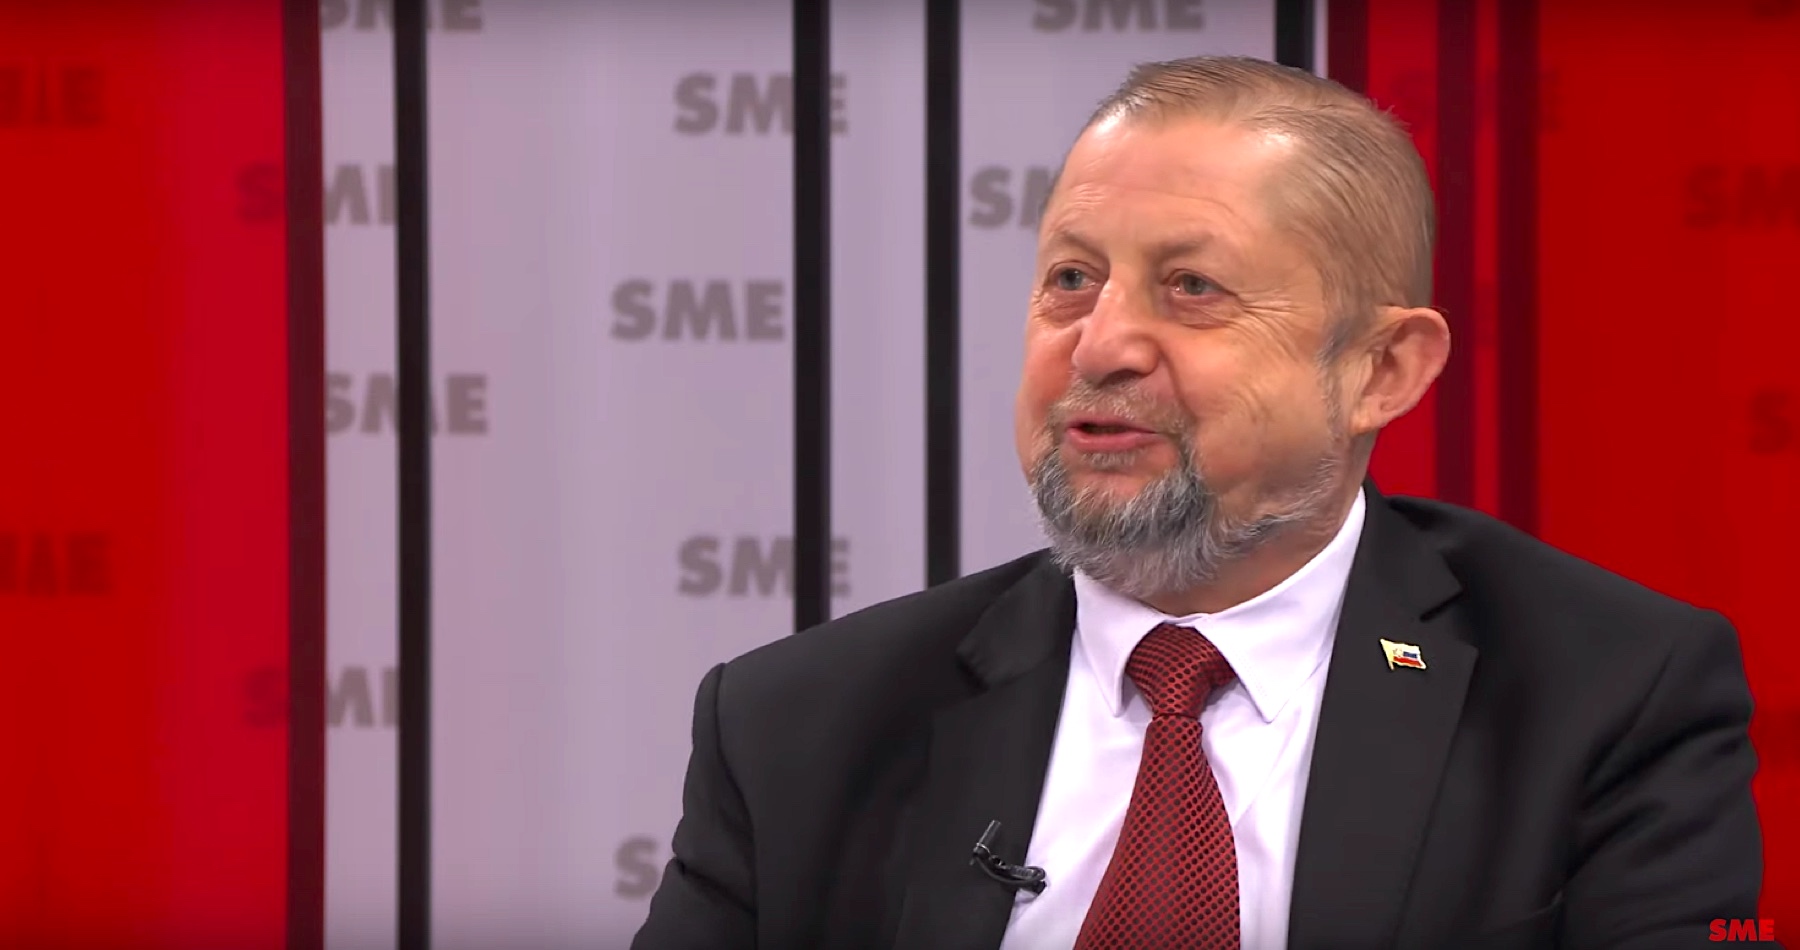 VIDEO: Harabin v ostrej debate s redaktorom Sorosovho denníka SME o prezidentských voľbách, o tom ako šíril vysoko falošný obsah, o jeho systéme rozlišovania dezinformácií a pravdy